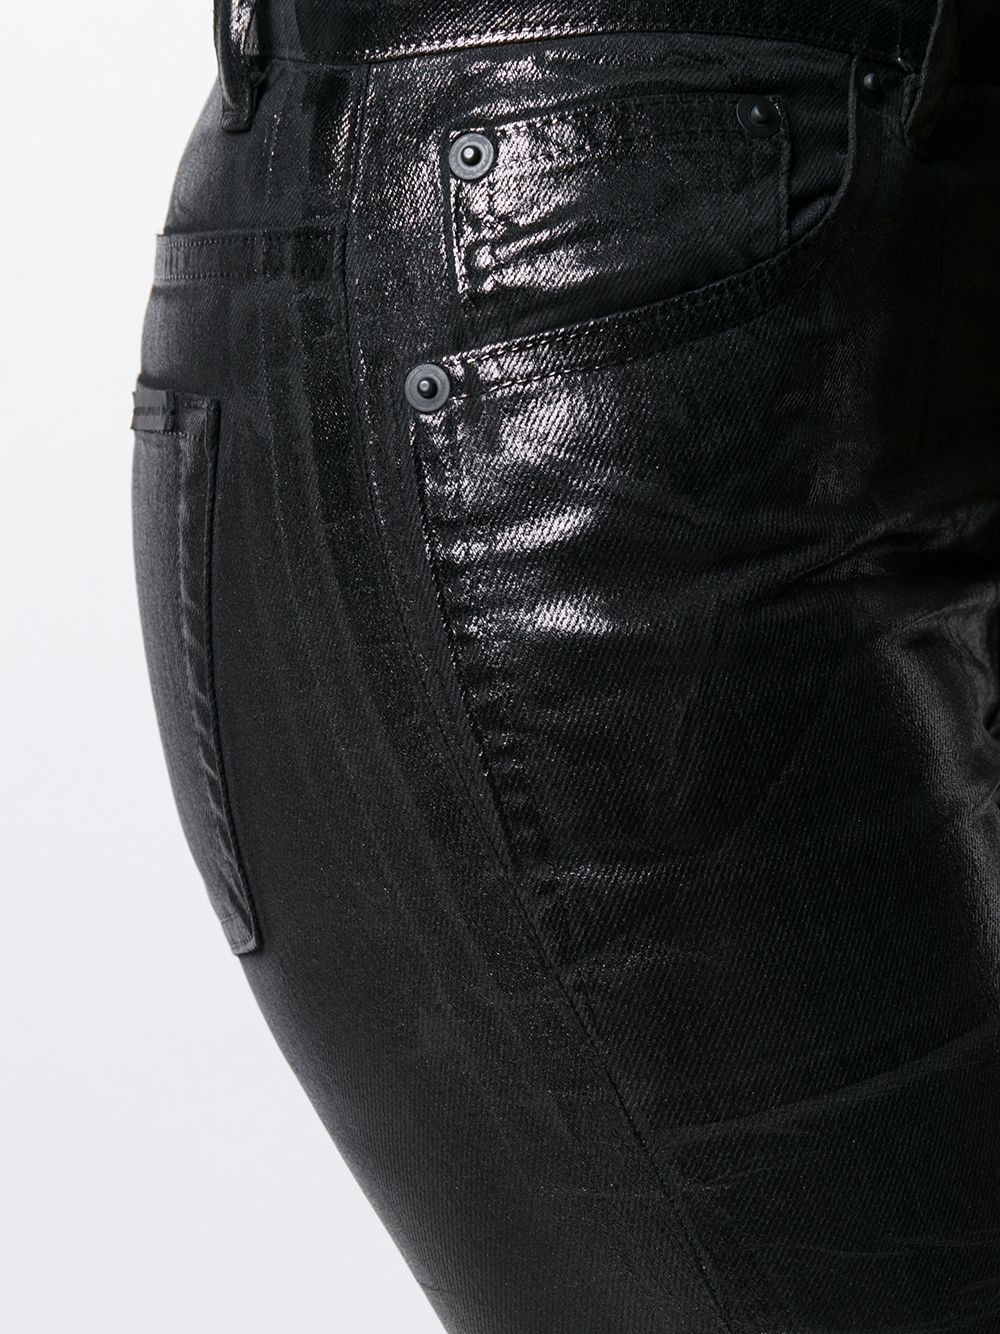 фото Saint laurent джинсы скинни с пятью карманами